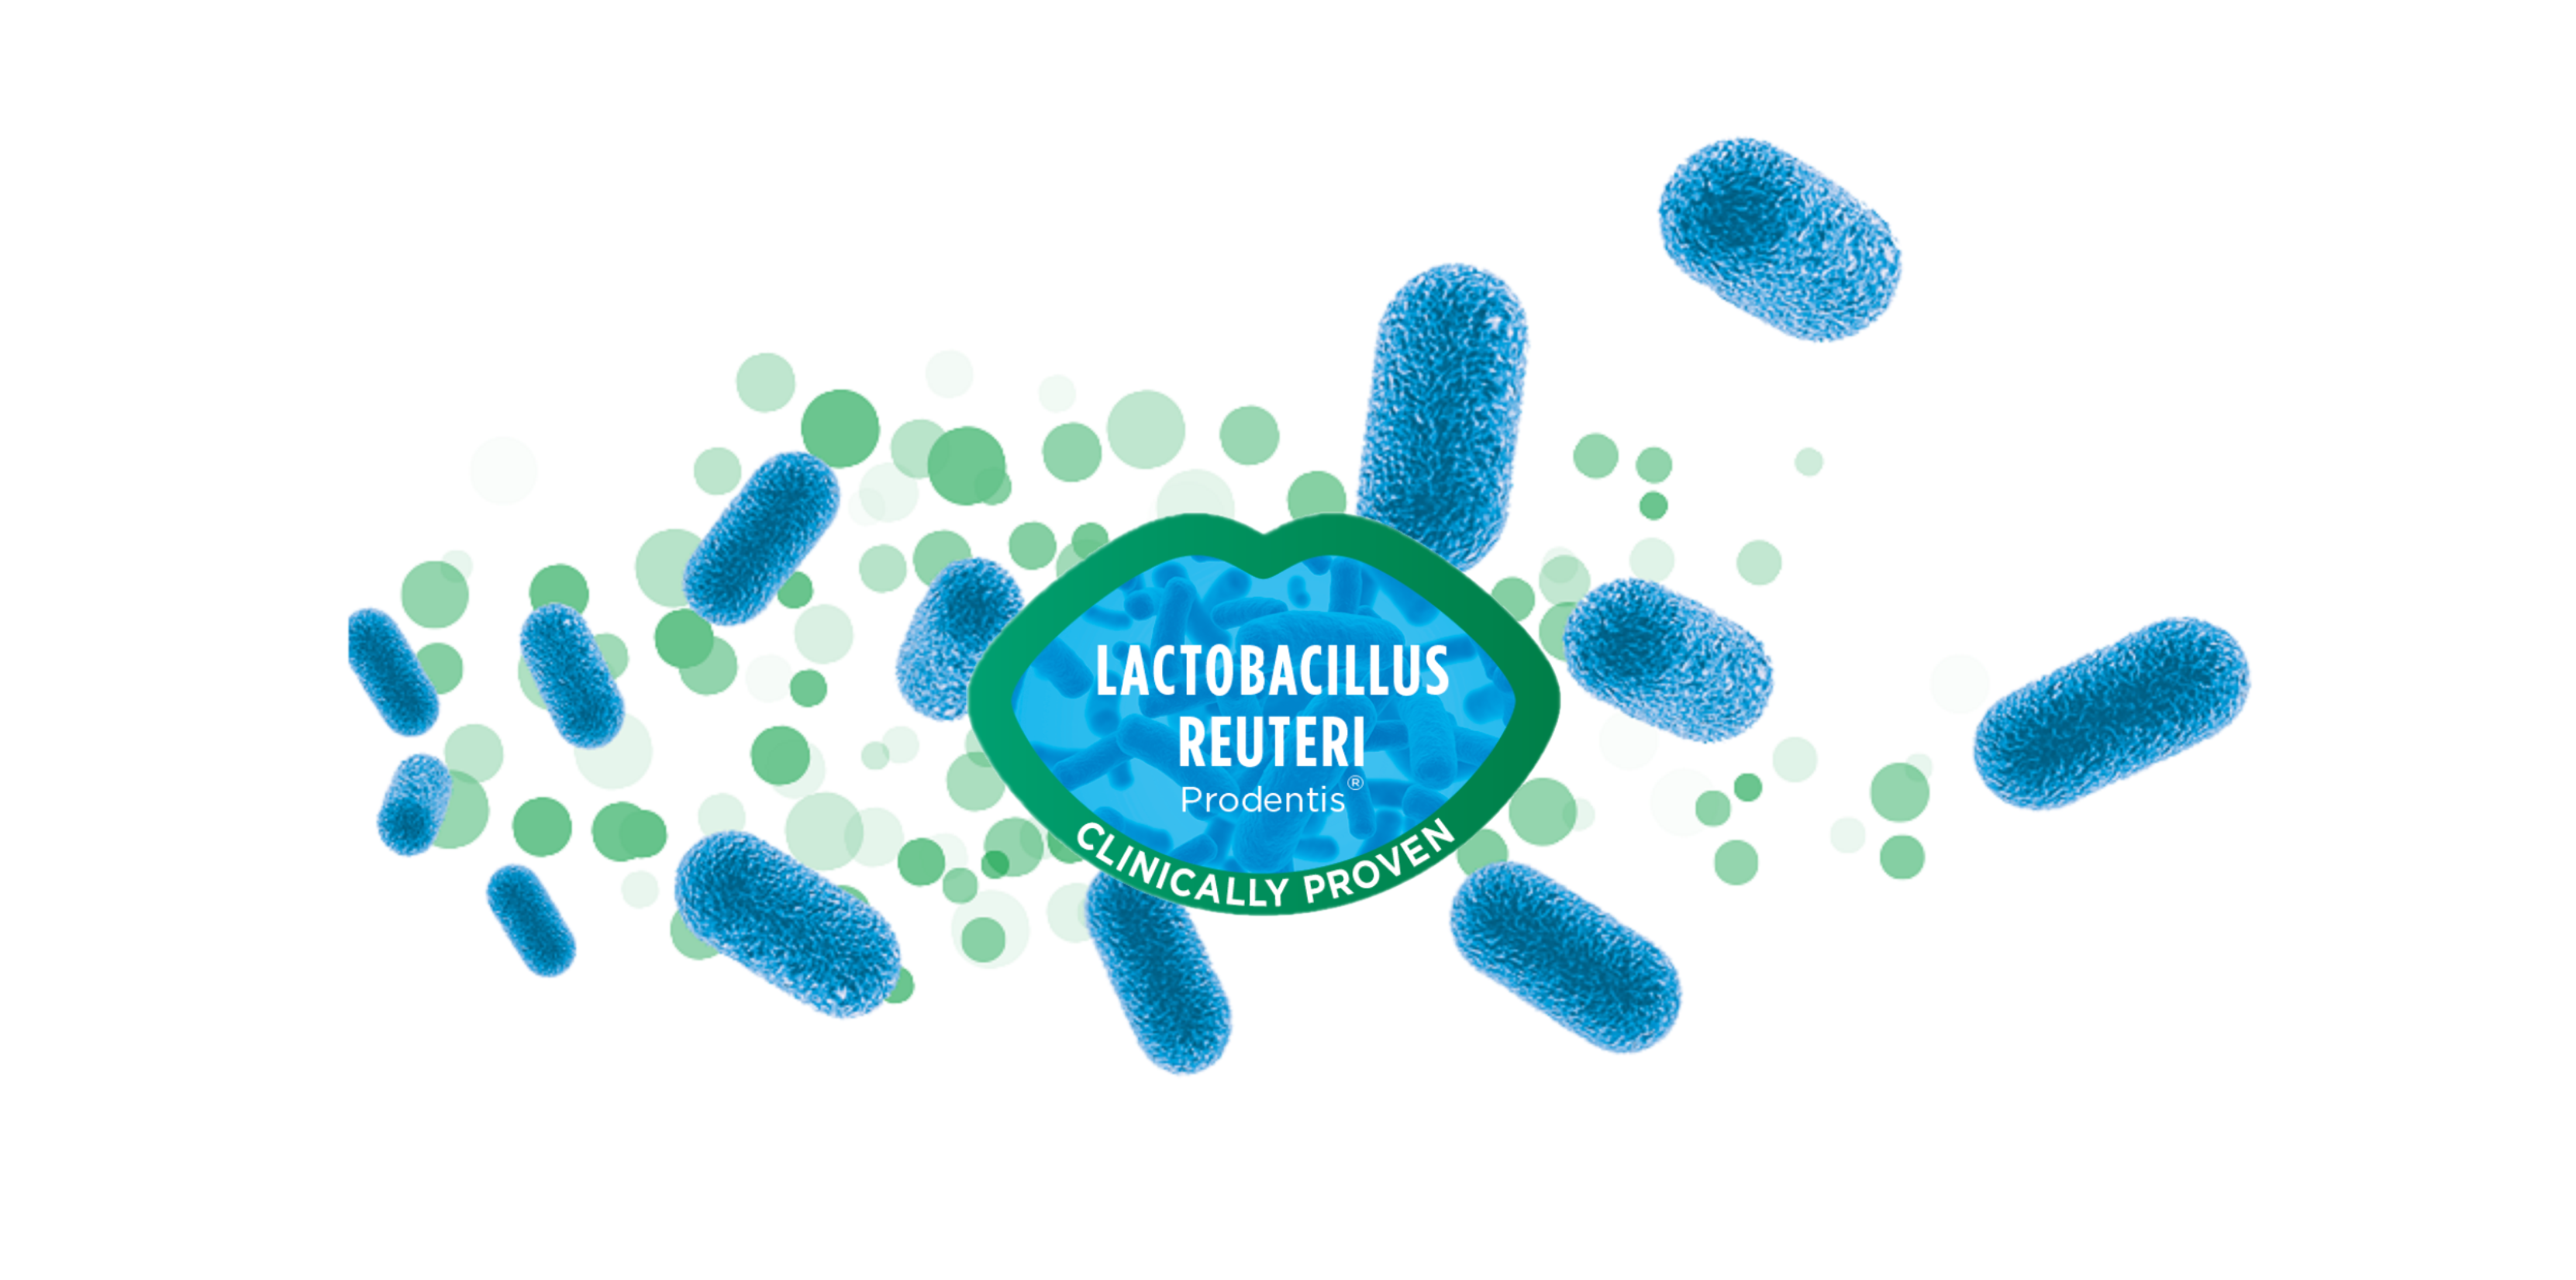 Lactobacillus reuteri Prodentis, Probiotic for Maintenance of Healthy Gums